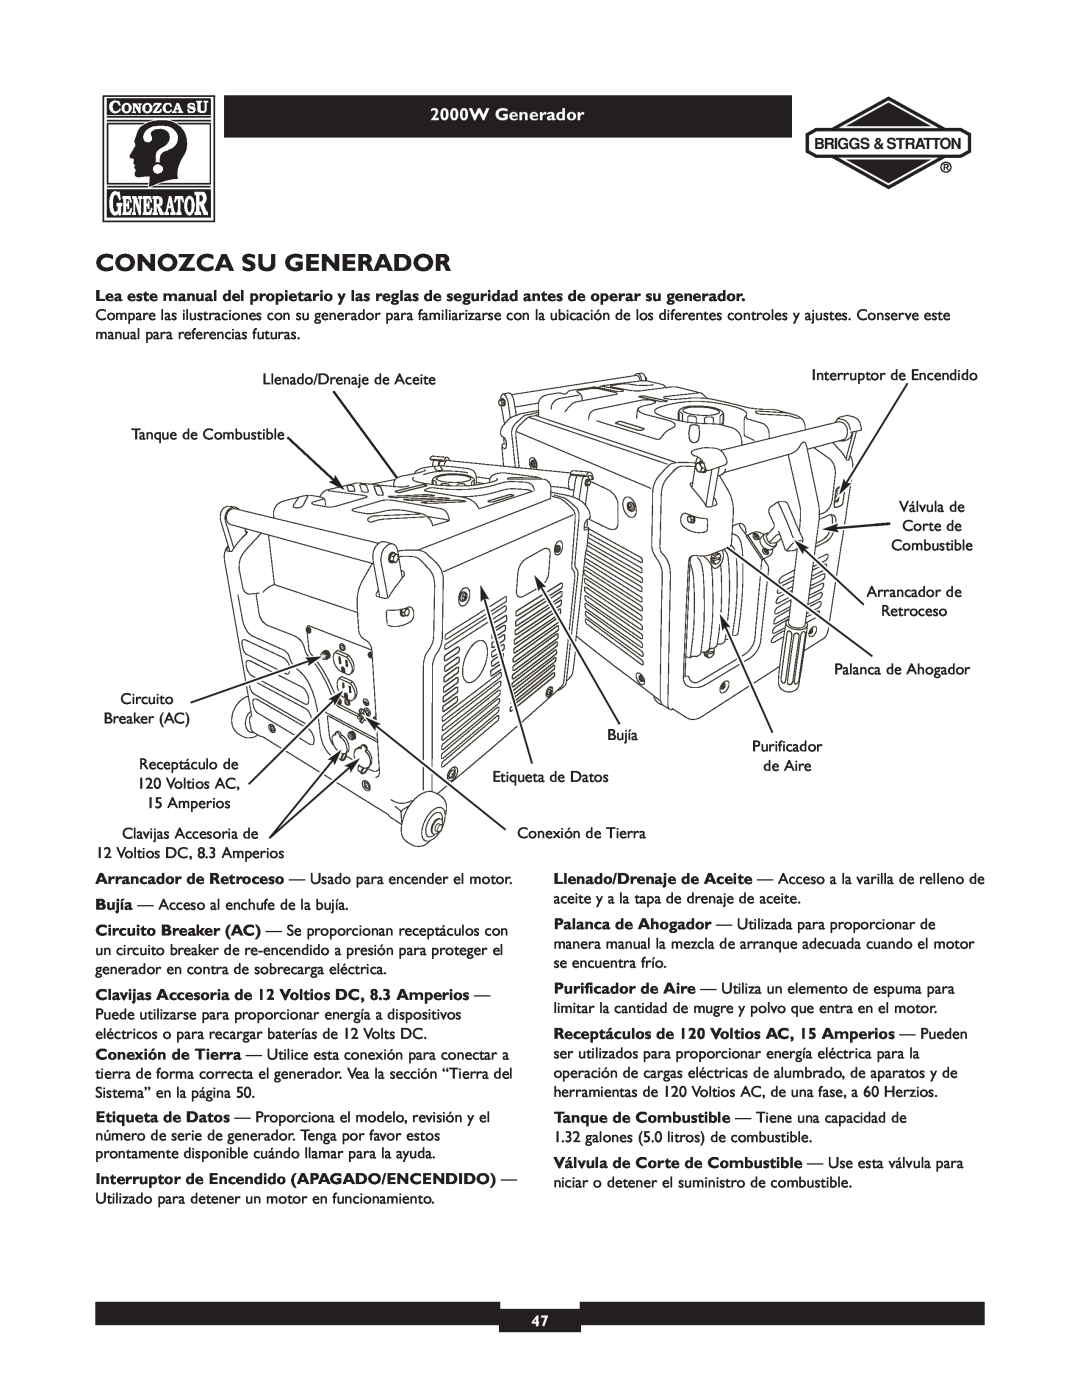 Briggs & Stratton 30239 owner manual Conozca Su Generador, 2000W Generador 